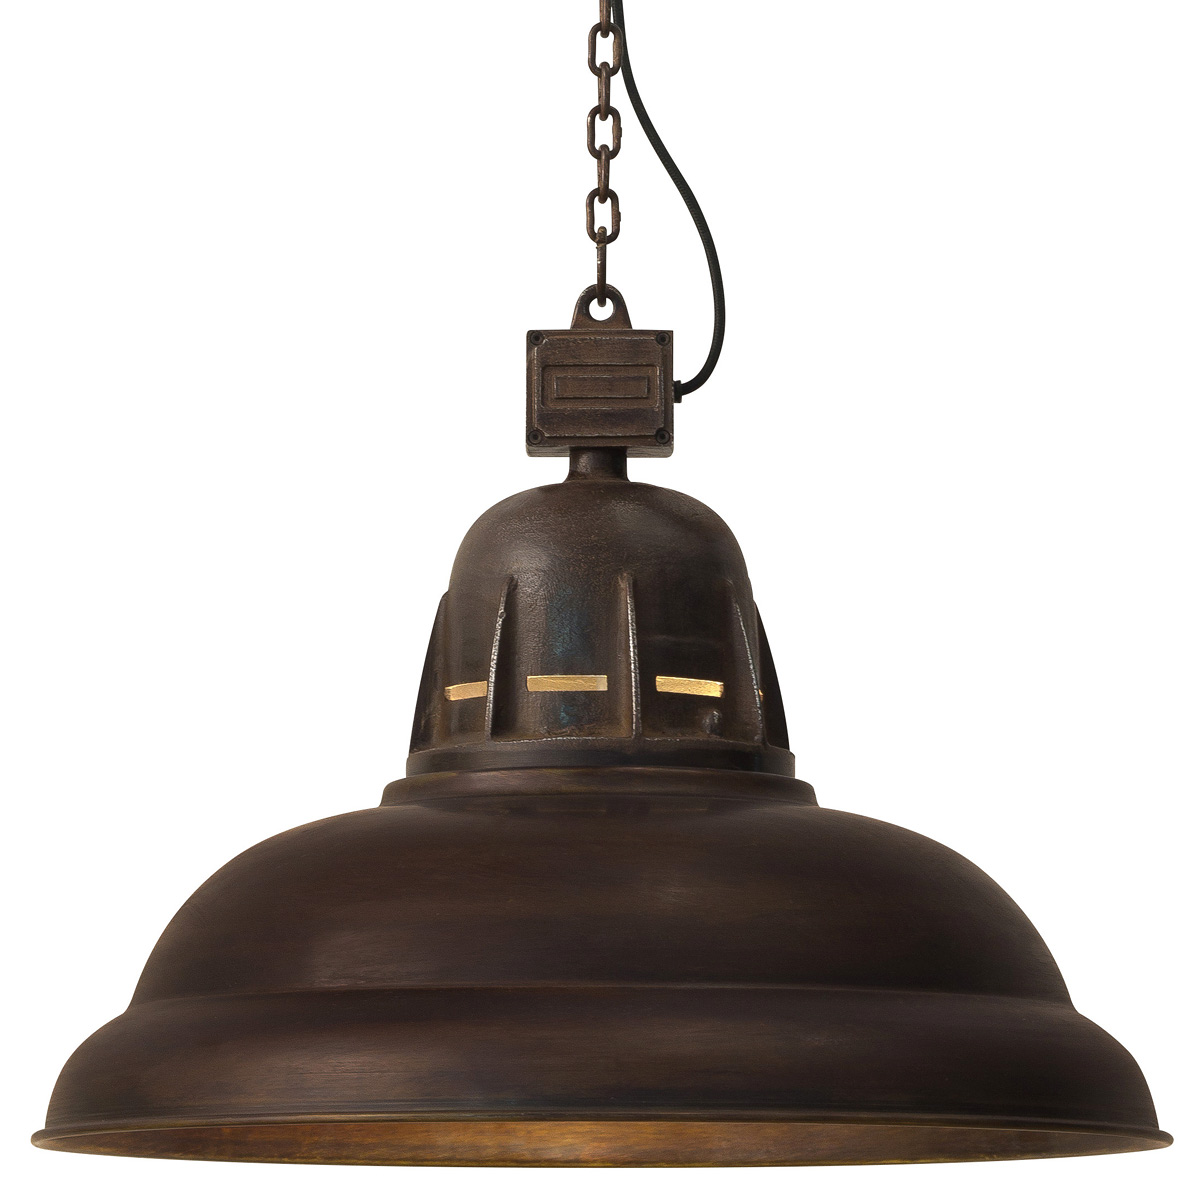 BOAR Massive Industriestil-Lampe mit Kupfer-Patina: Die Industriestil-Hängelampe mit 57 cm Durchmesser